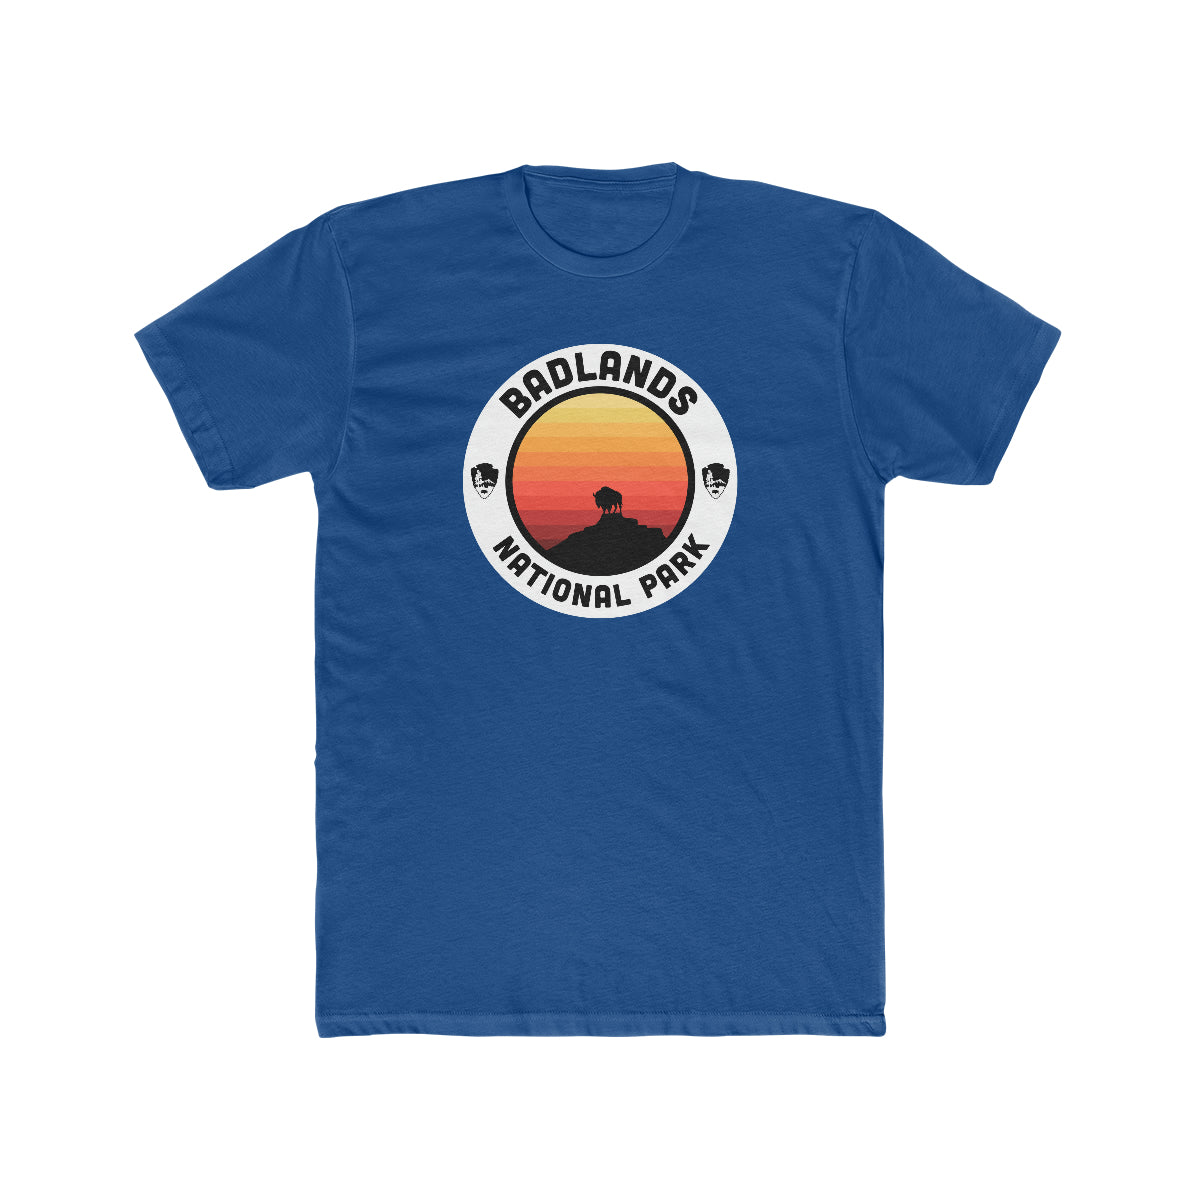 Badlands National Park T-Shirt - Round Badge Design